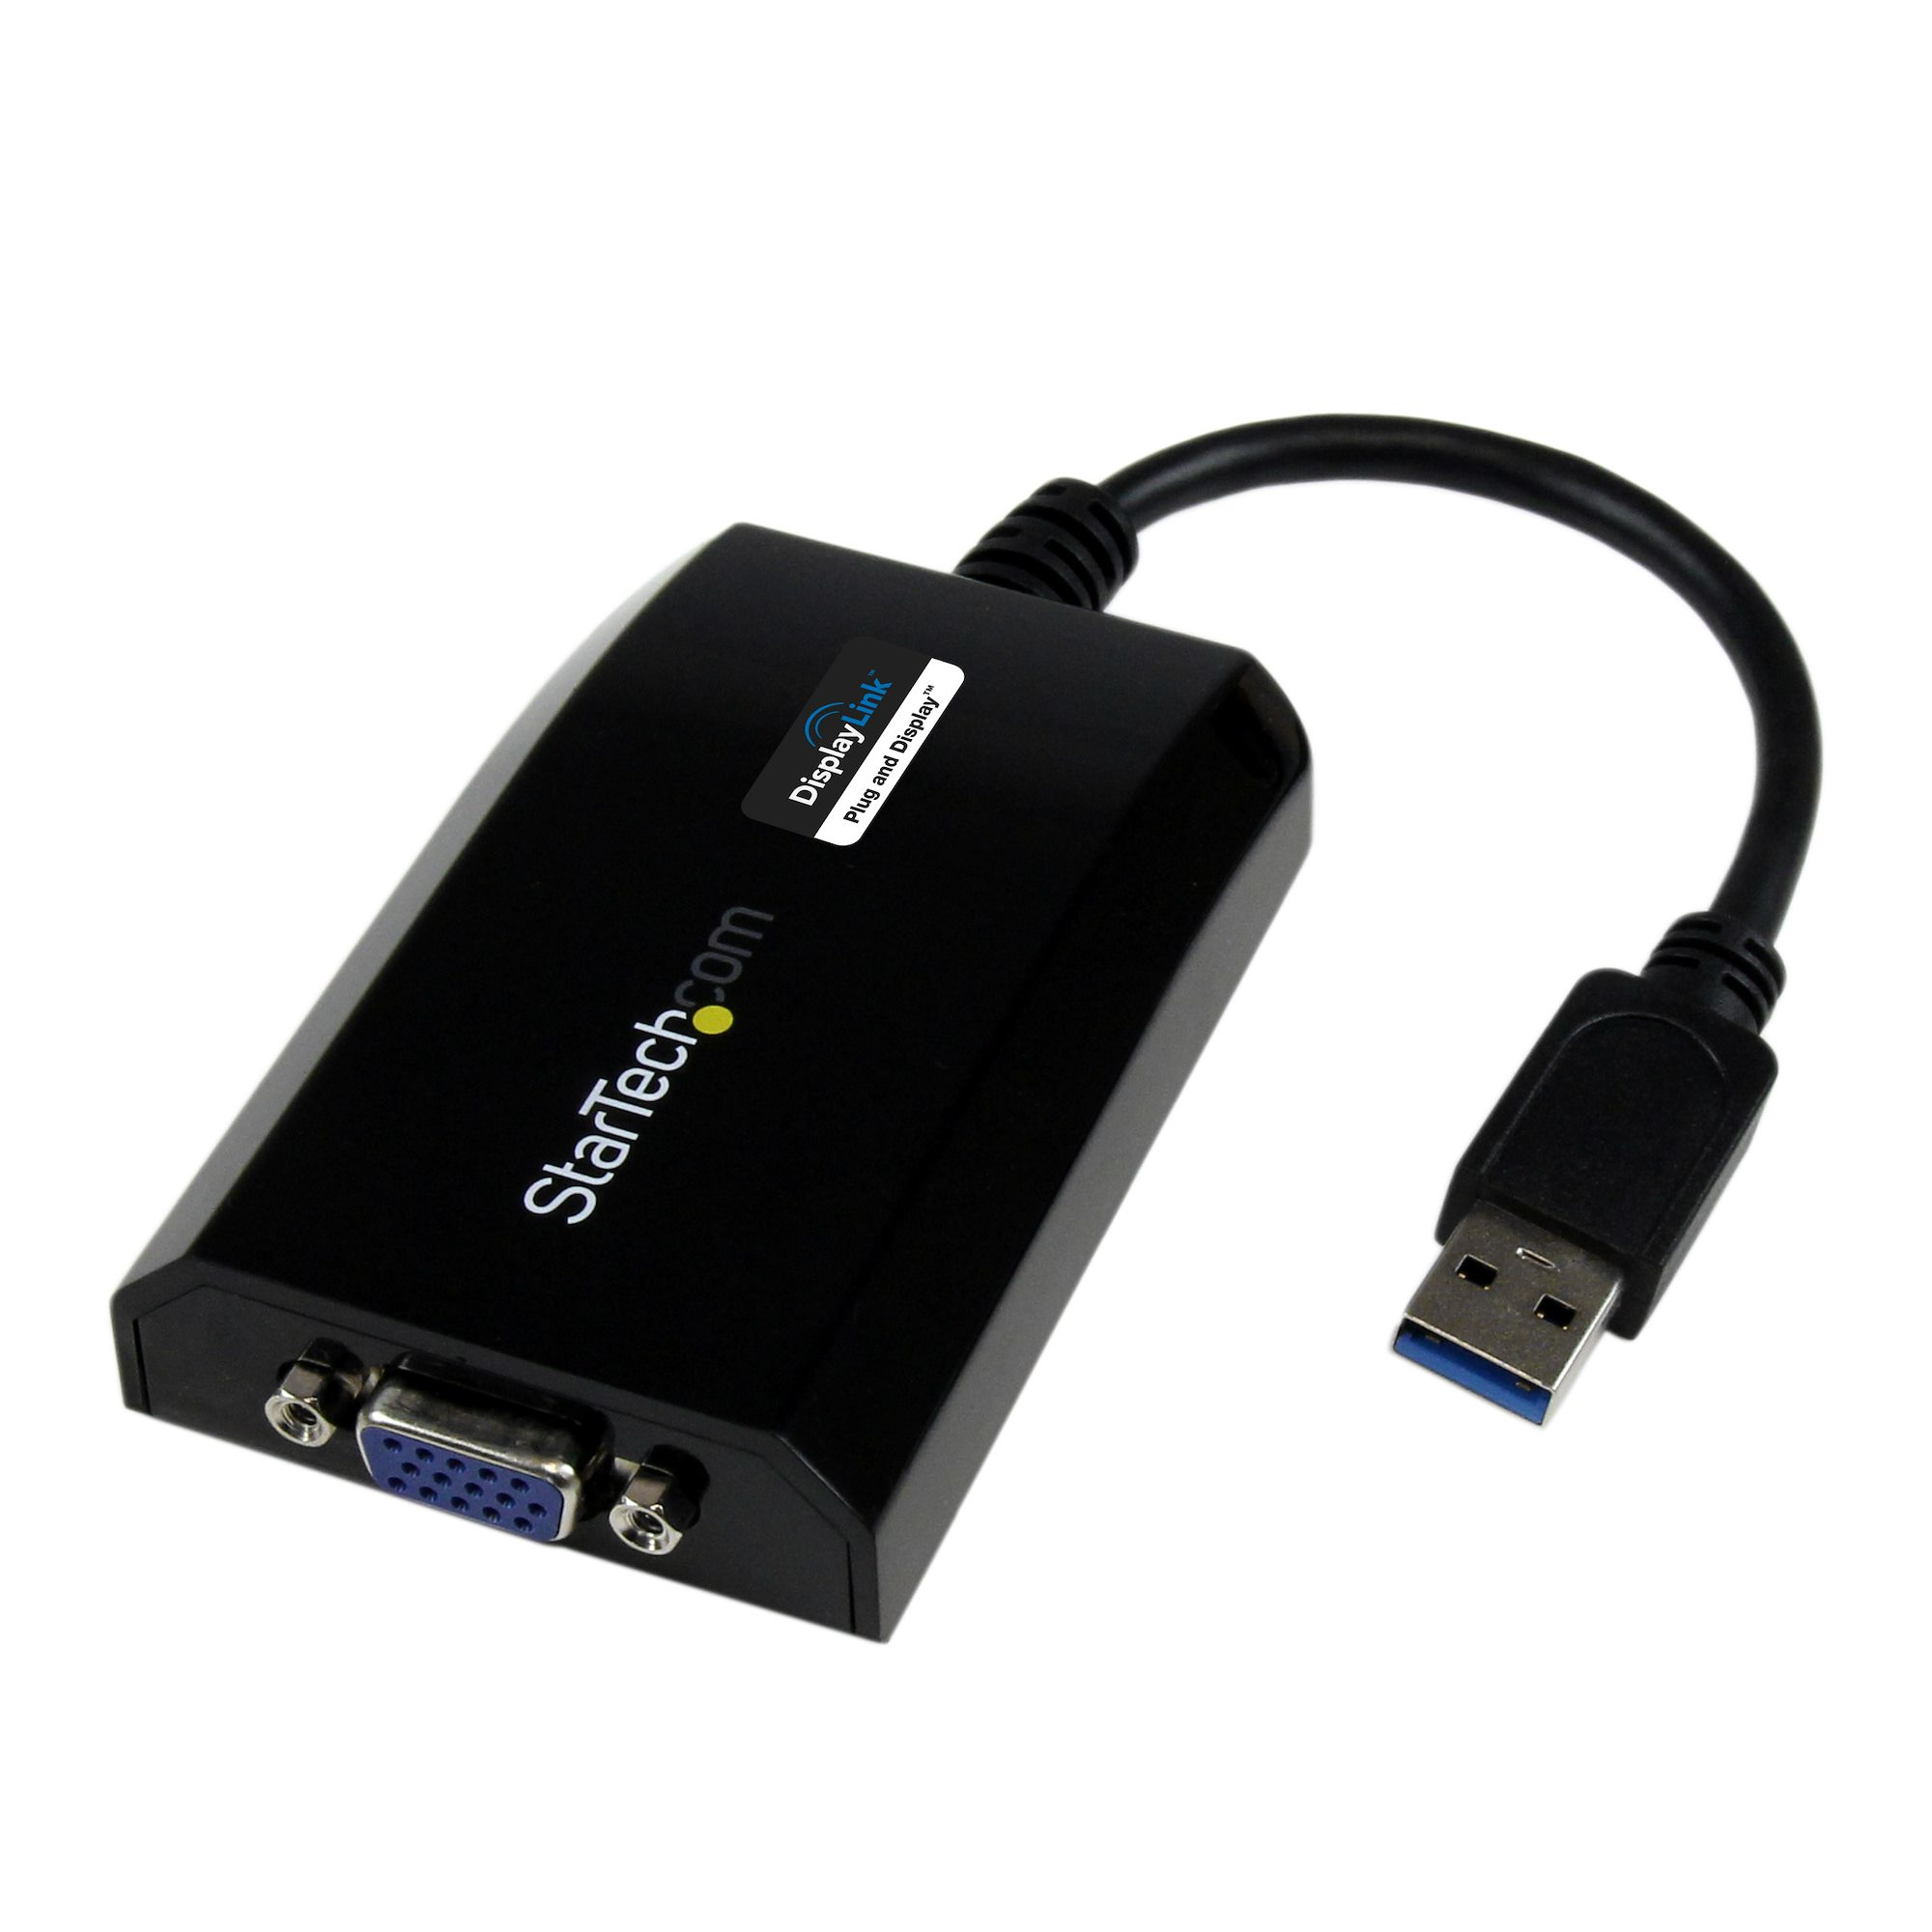 StarTech.com USB 3.0 auf VGA Video Adapter - Externe Multi Monitor Grafikkarte für PC und MAC - 1920x1200